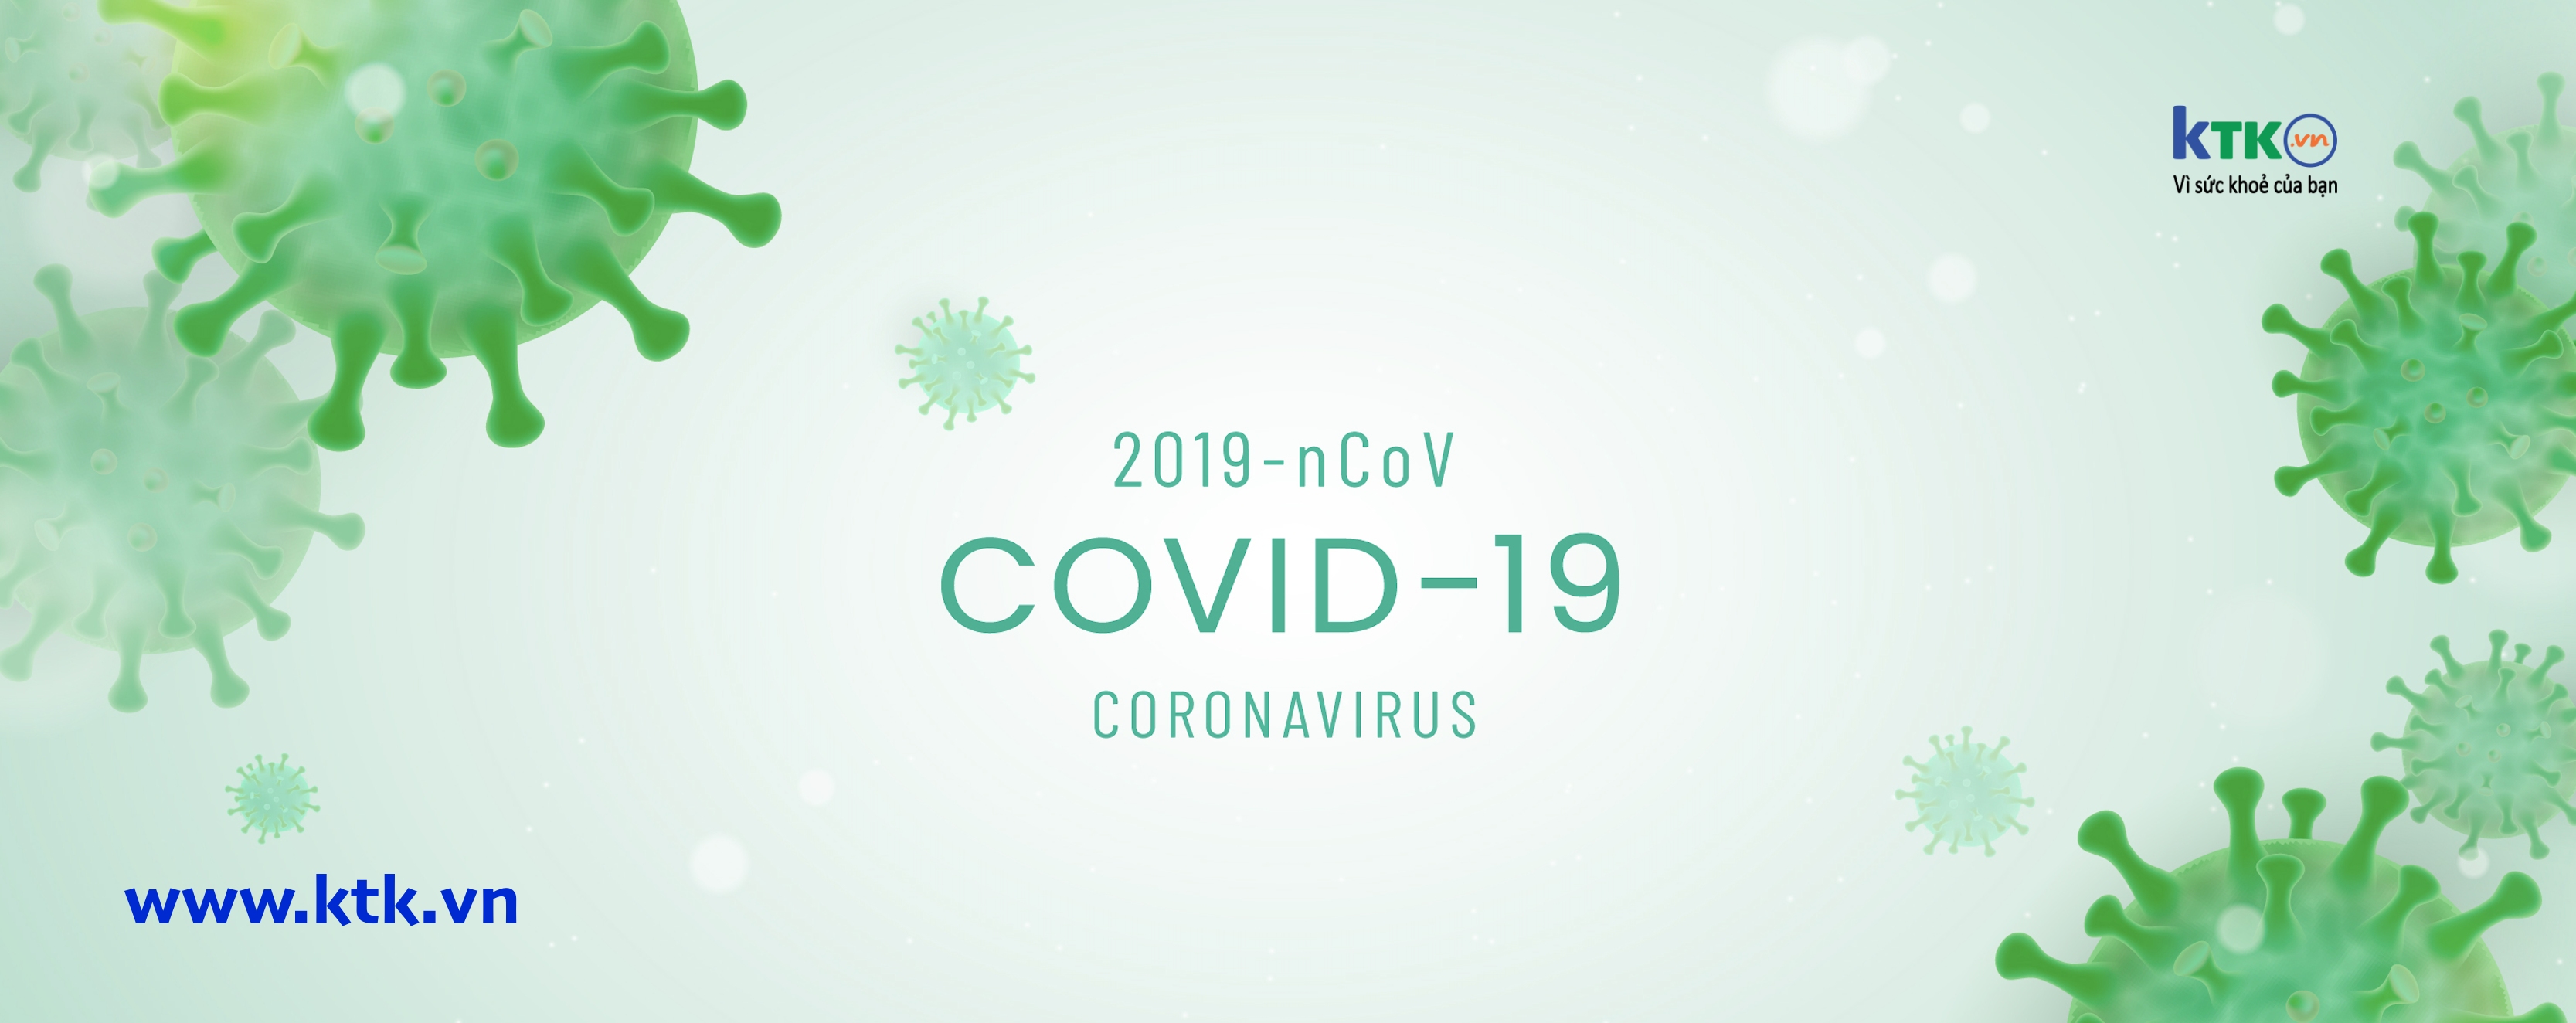 WHO tuyên bố Covid-19 không còn là tình trạng y tế khẩn cấp toàn cầu.